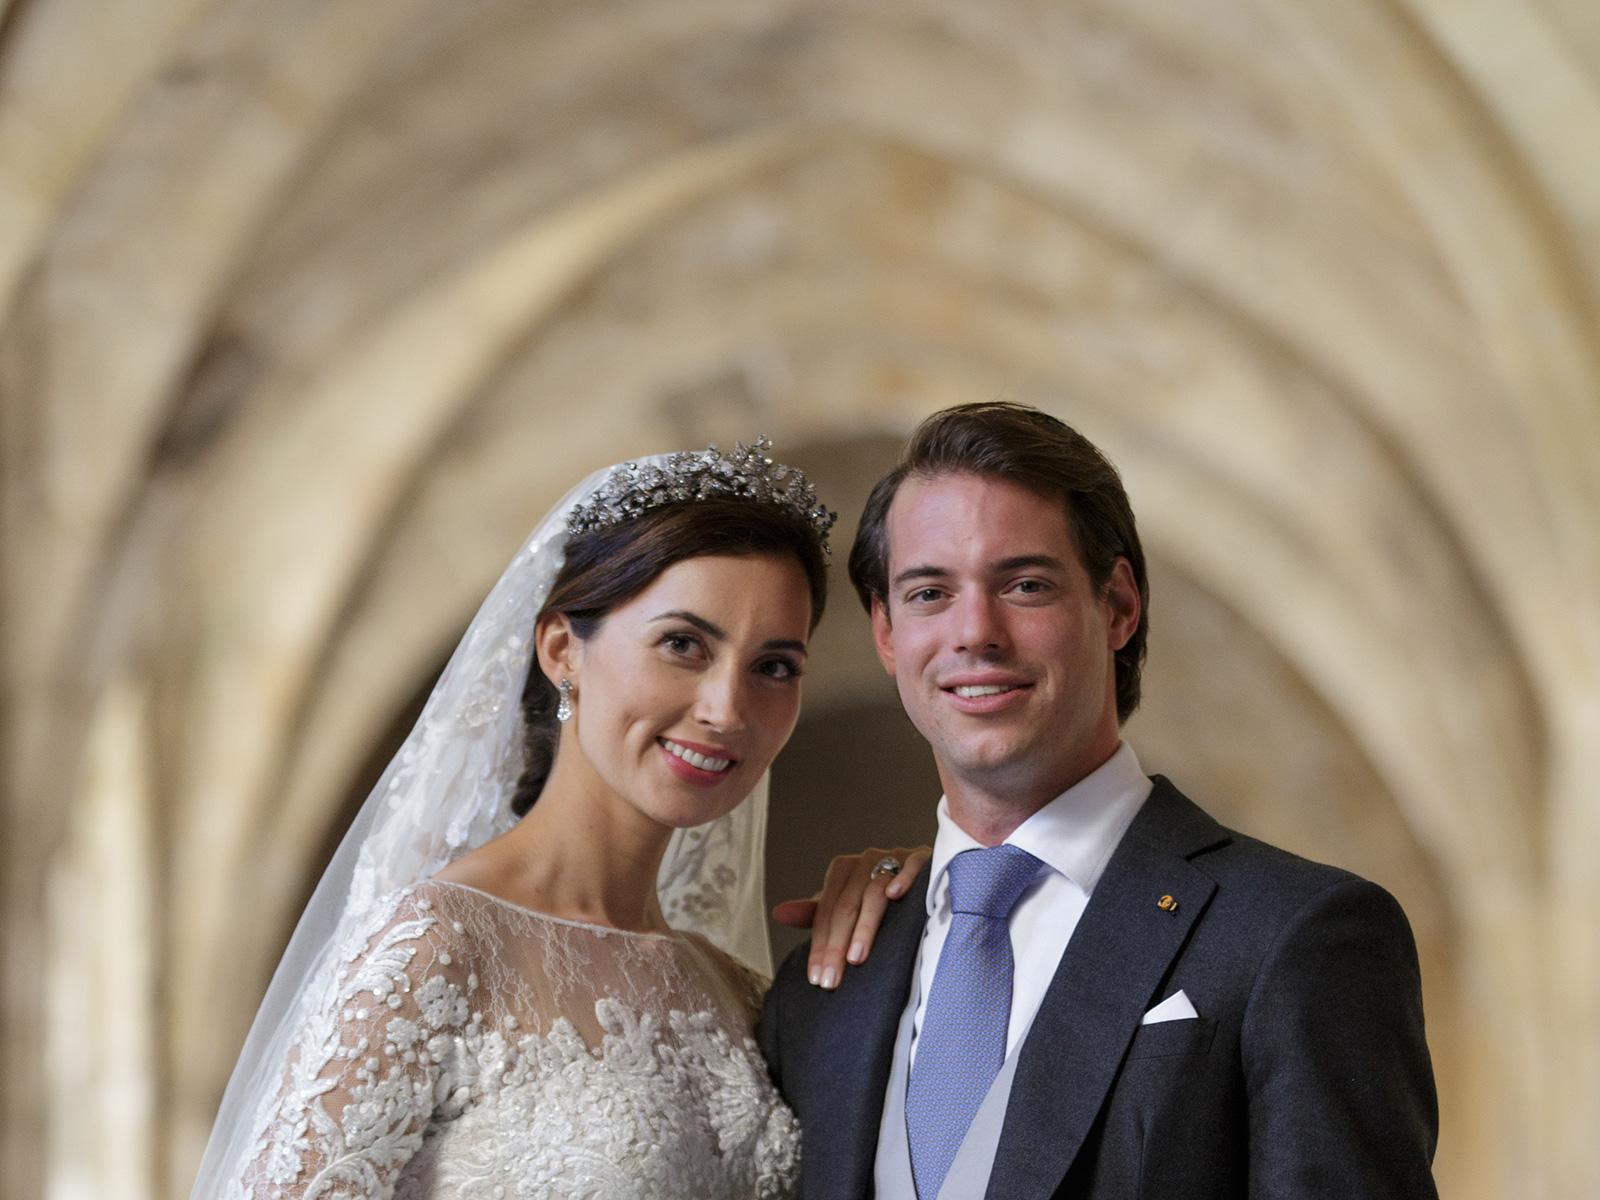 Le Prince Félix et la Princesse Claire lors de leur mariage religieux en 2013